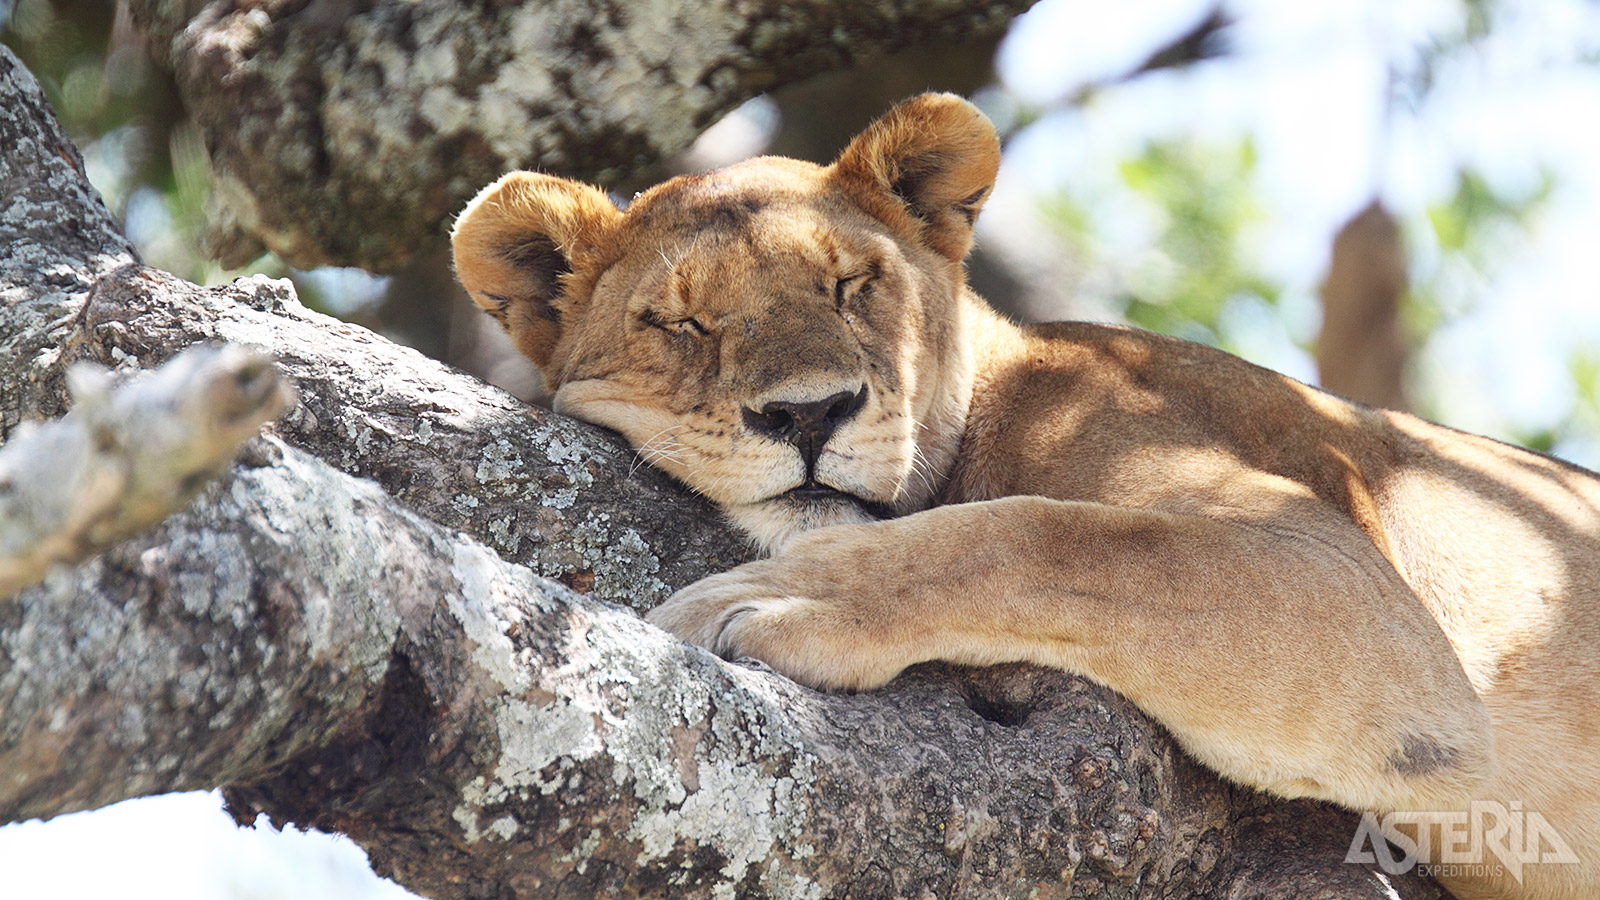 Het wereldberoemde Kruger Nationaal Park biedt een unieke wildervaring